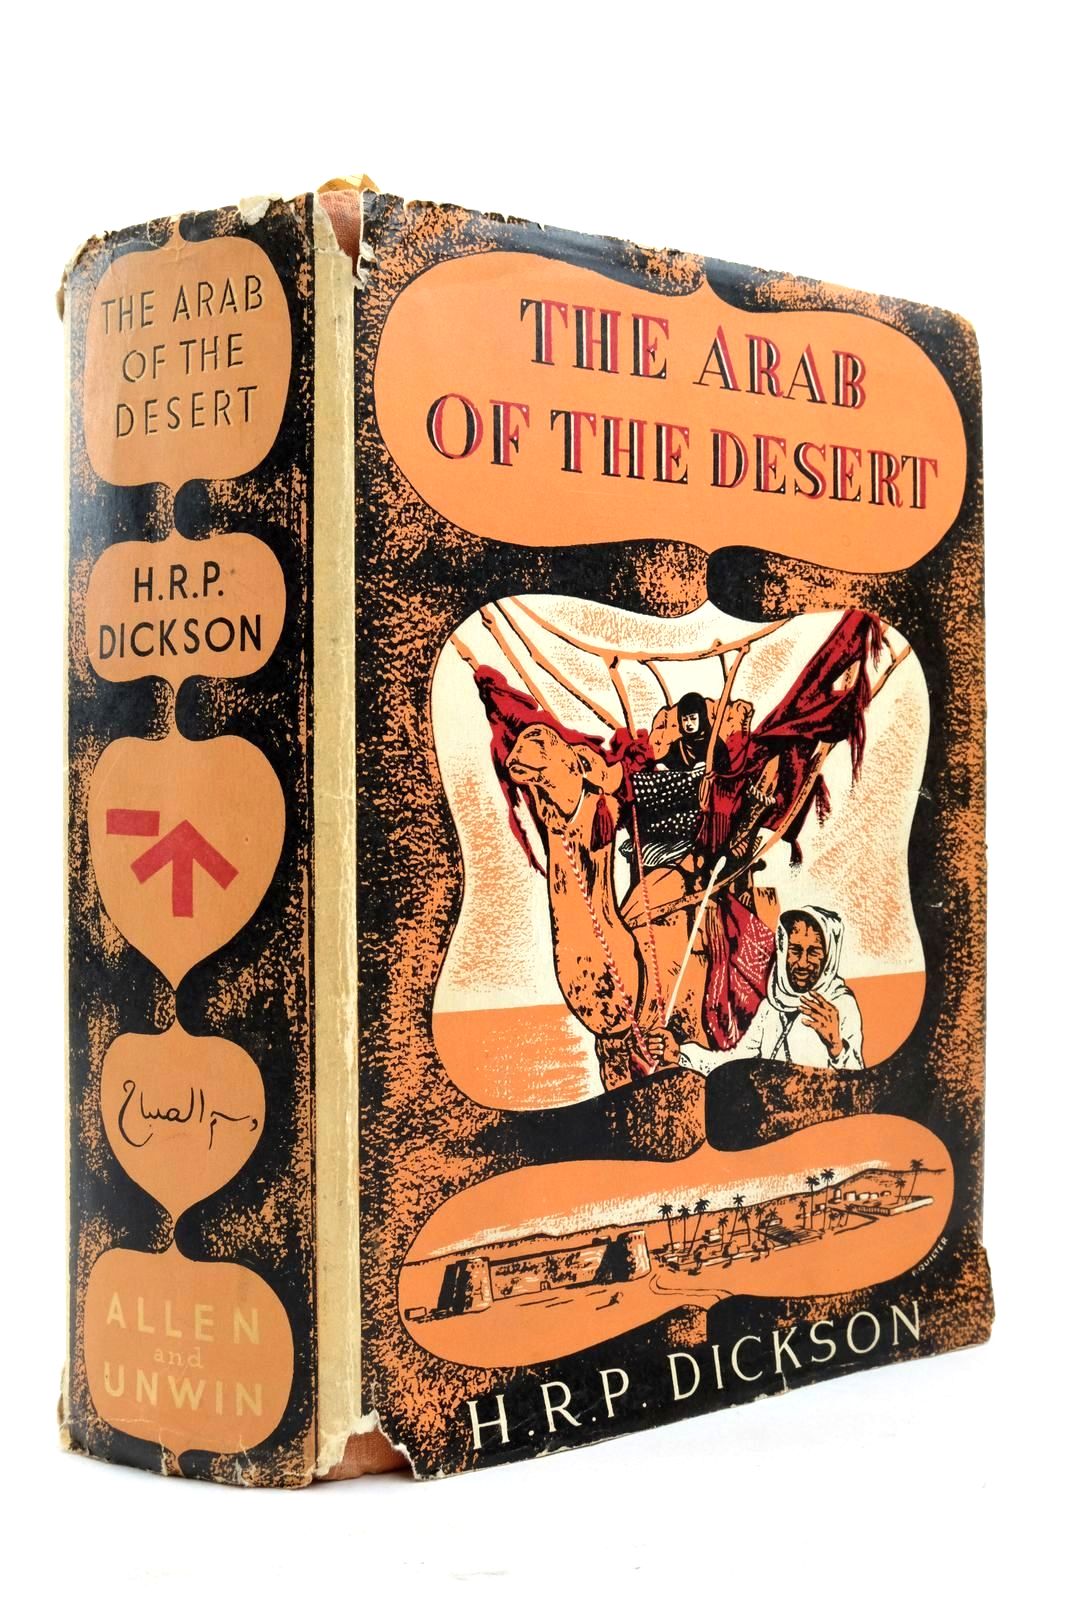 The Arab of The Desert